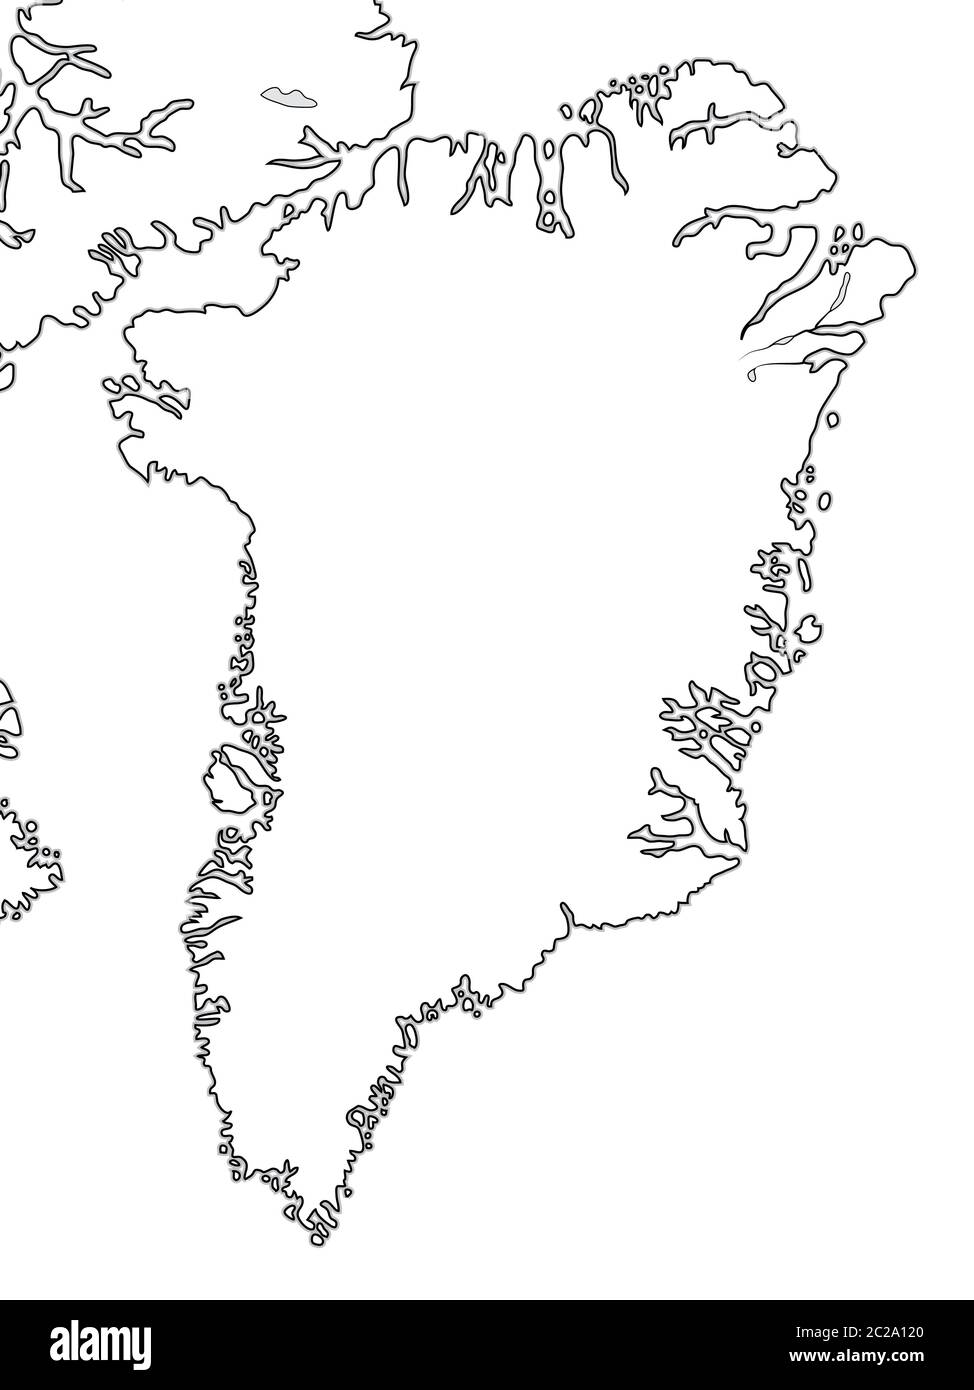 mappa-mondiale-della-groenlandia-groenlandia-arcipelago-artico